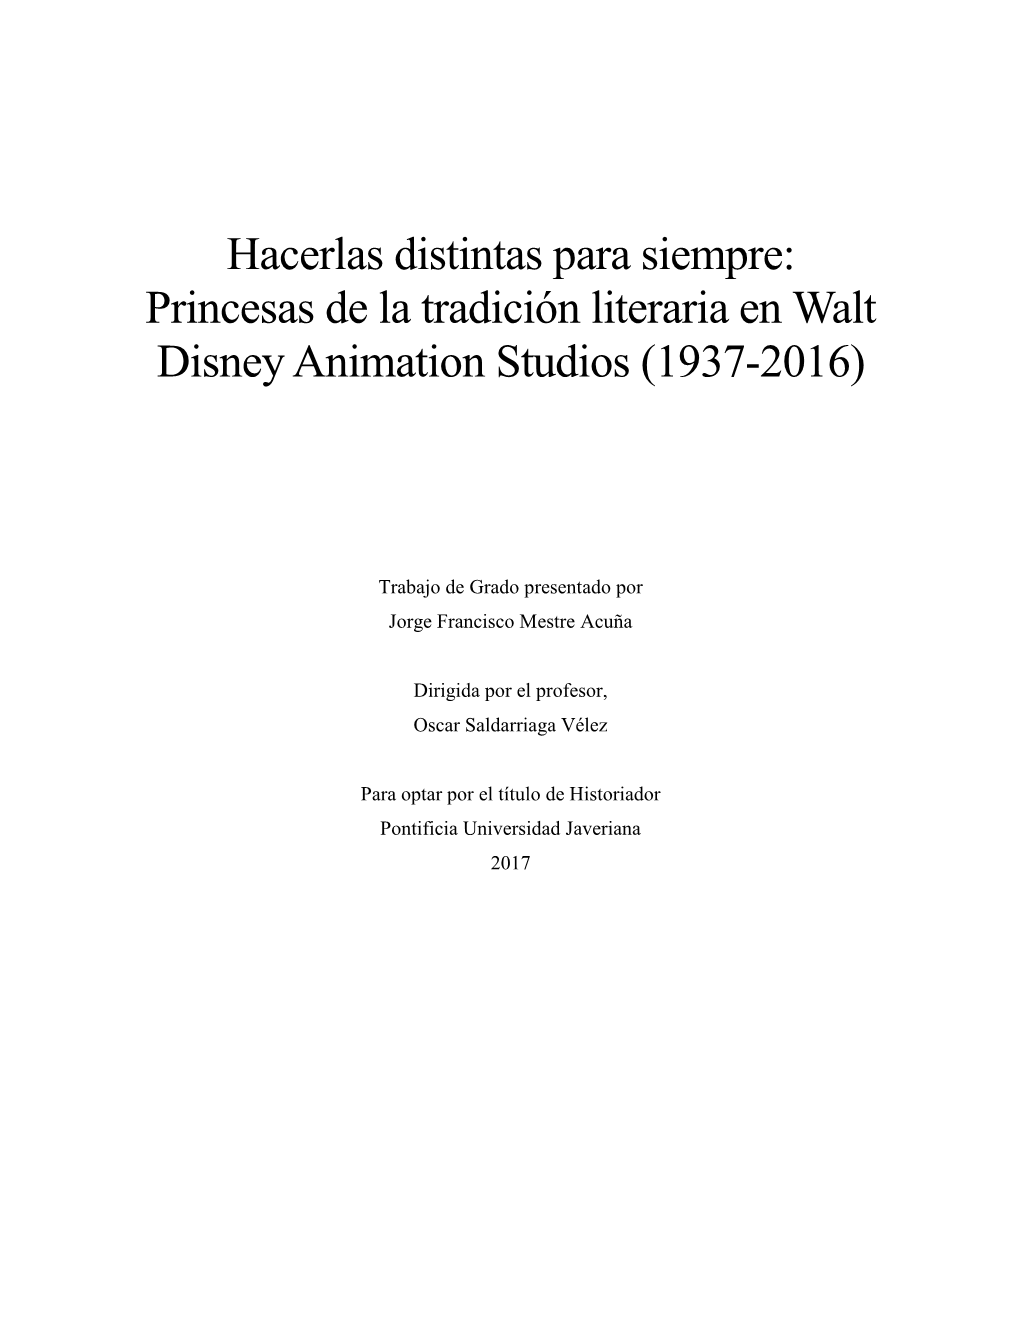 Princesas De La Tradición Literaria En Walt Disney Animation Studios (1937-2016)